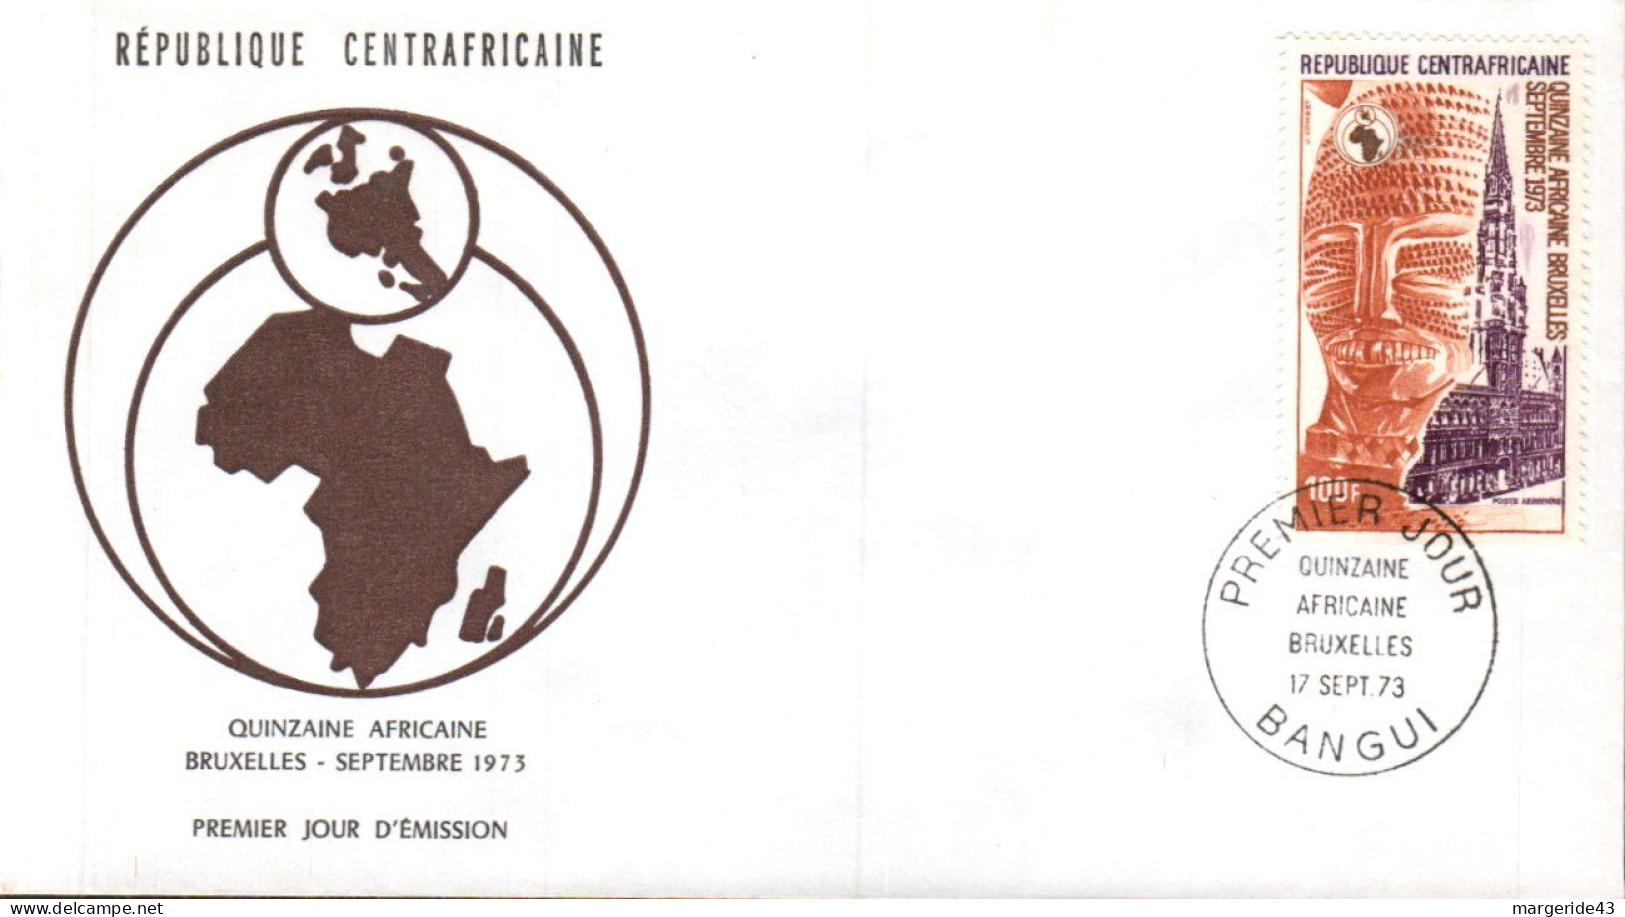 CENTRAFRIQUE FDC 1973 QUINZAINE AFRICAINE BRUXELLES - Centrafricaine (République)